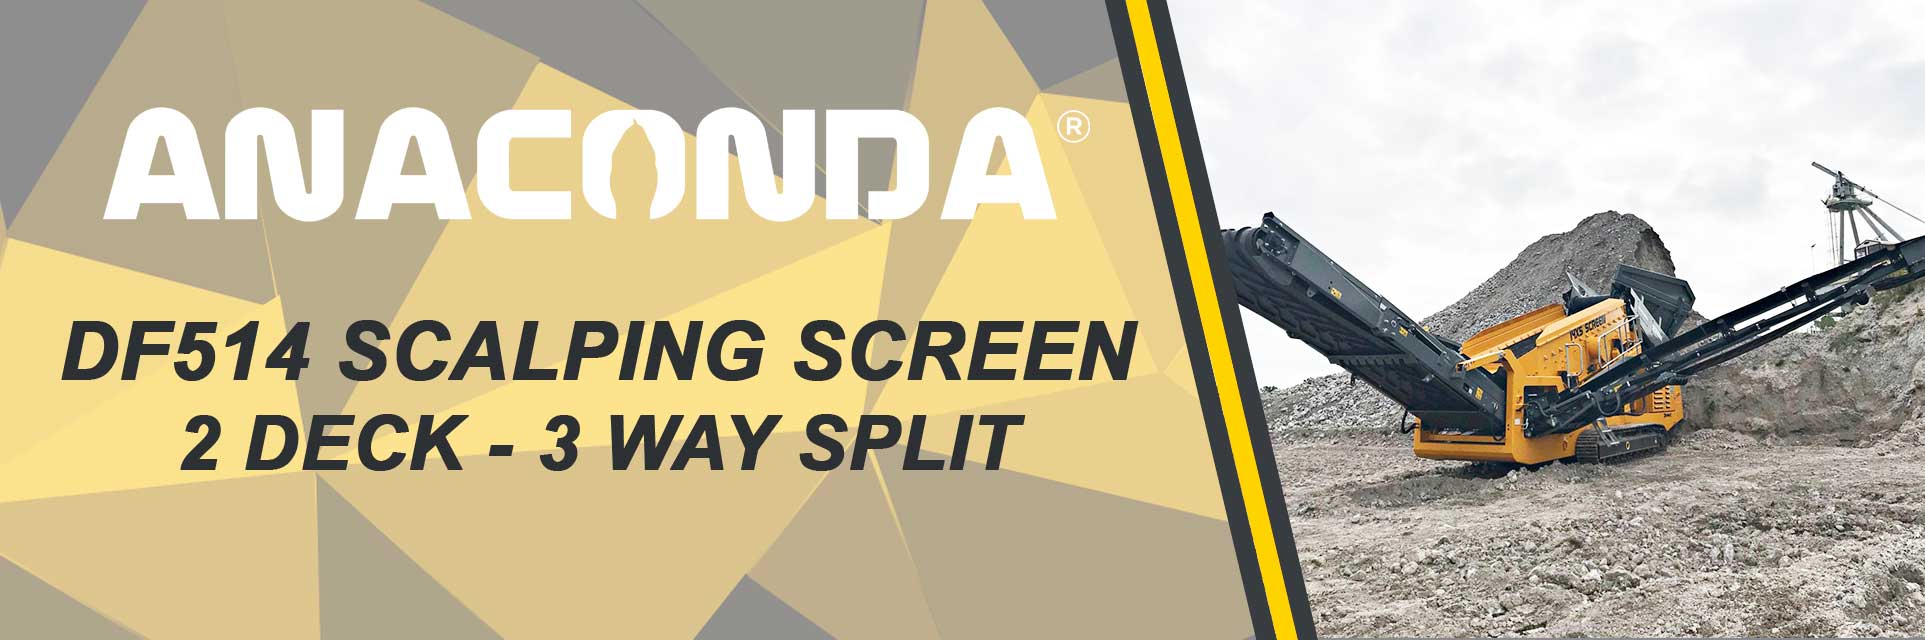 Anaconda DF514 Scalping Screen banner for Desktop